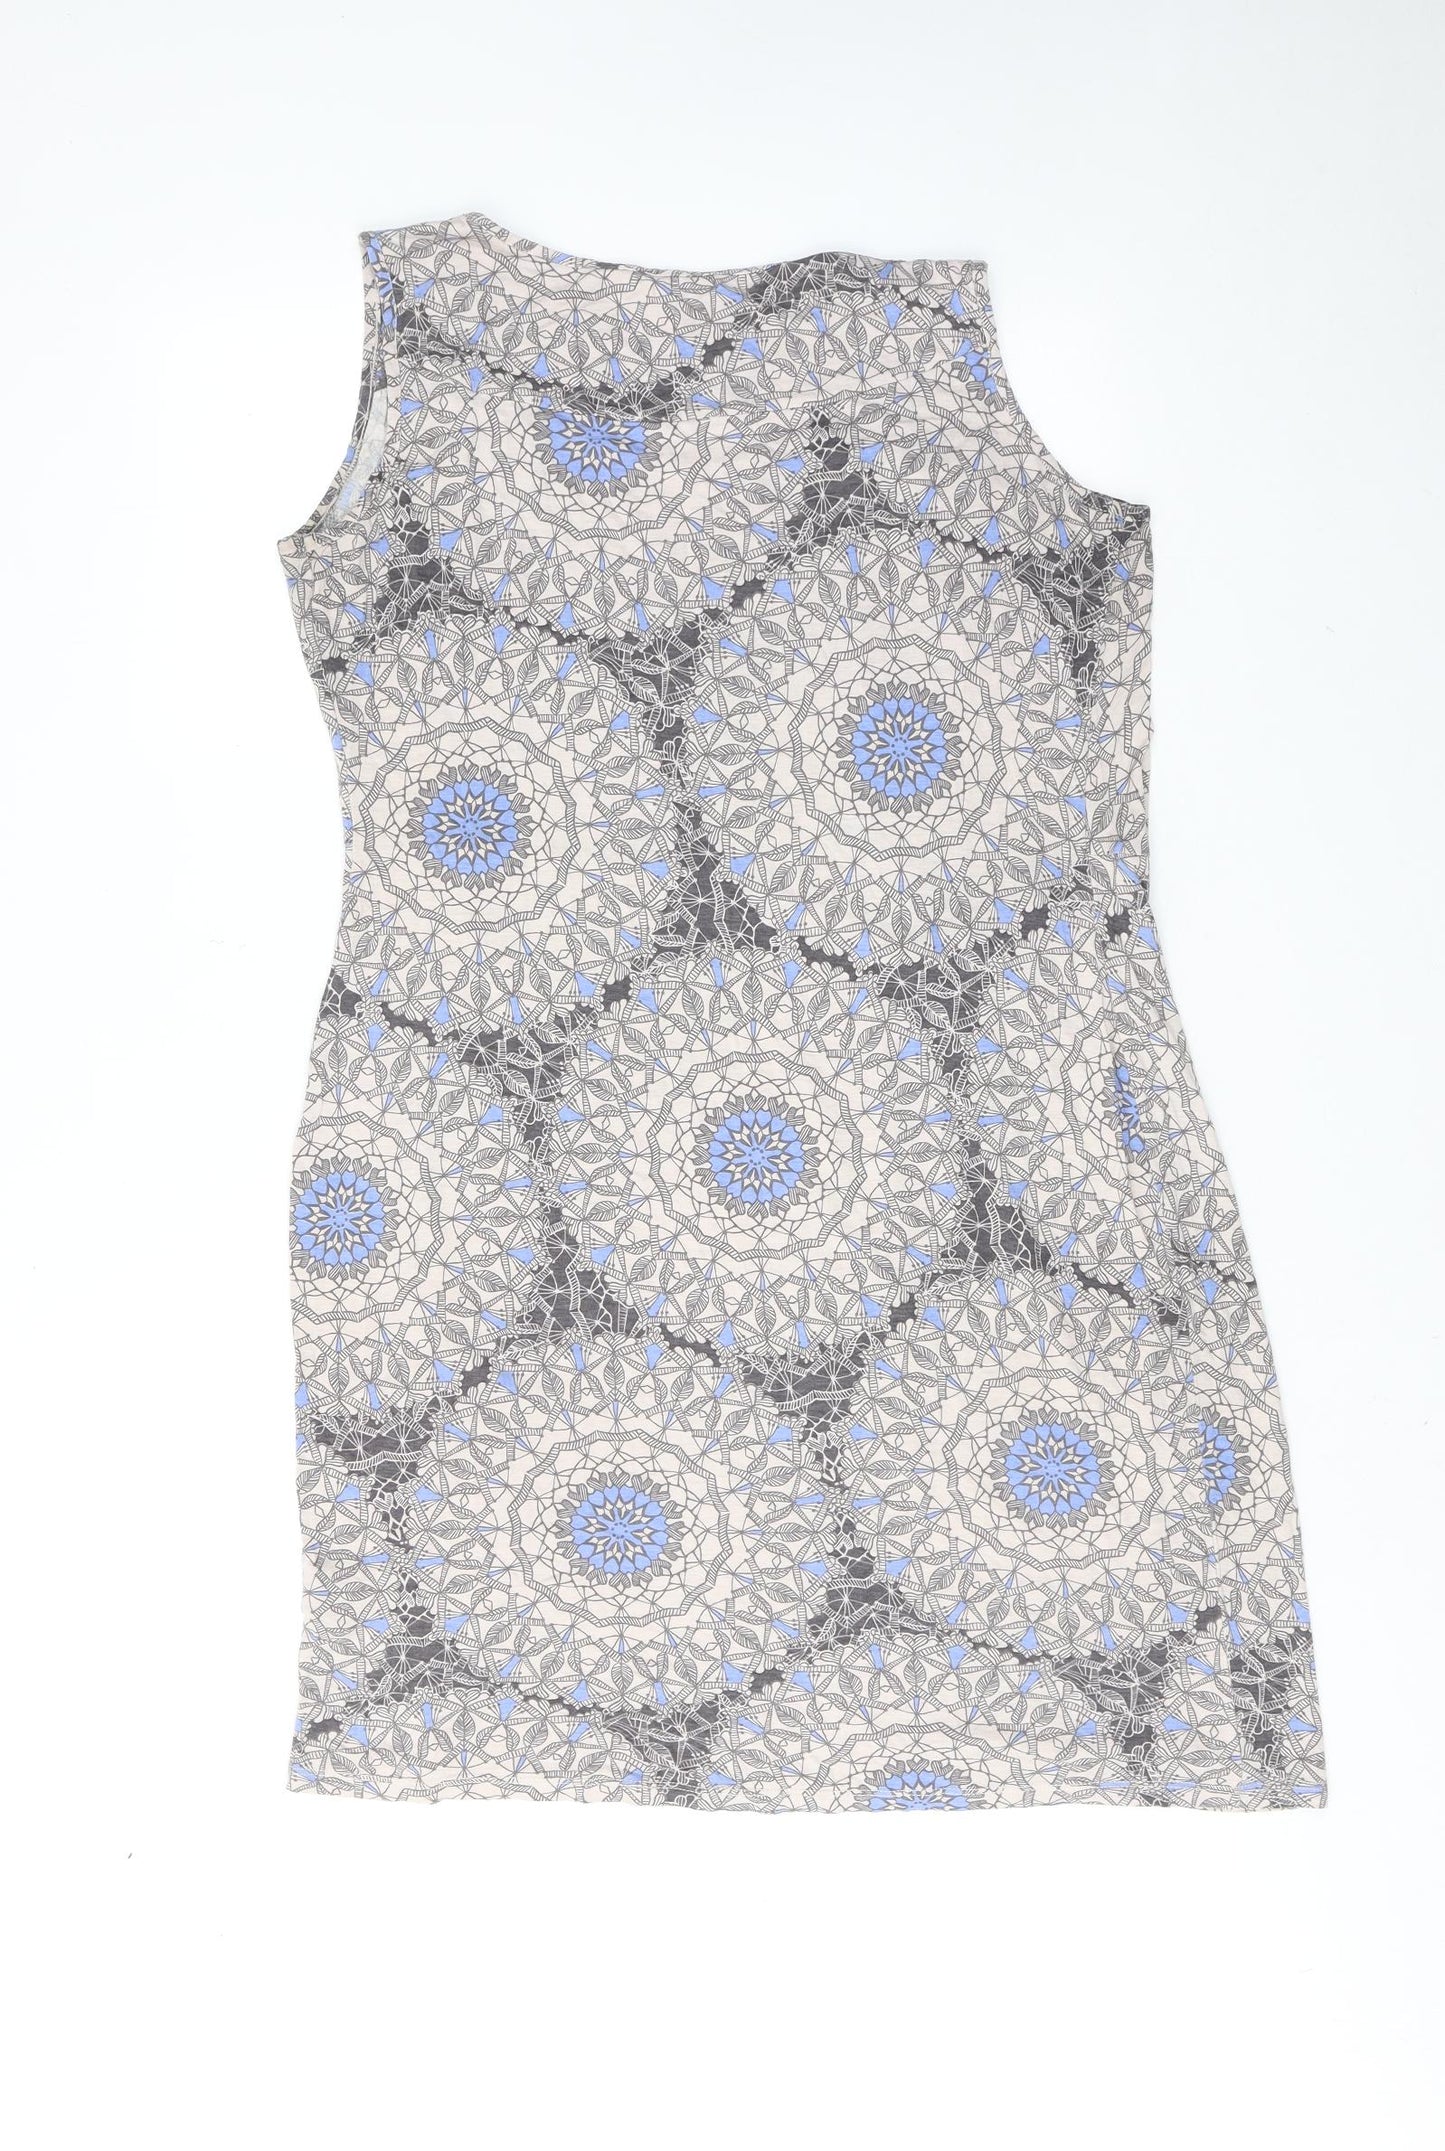 Per Una Womens Multicoloured Geometric Polyester A-Line Size 14 Round Neck Pullover